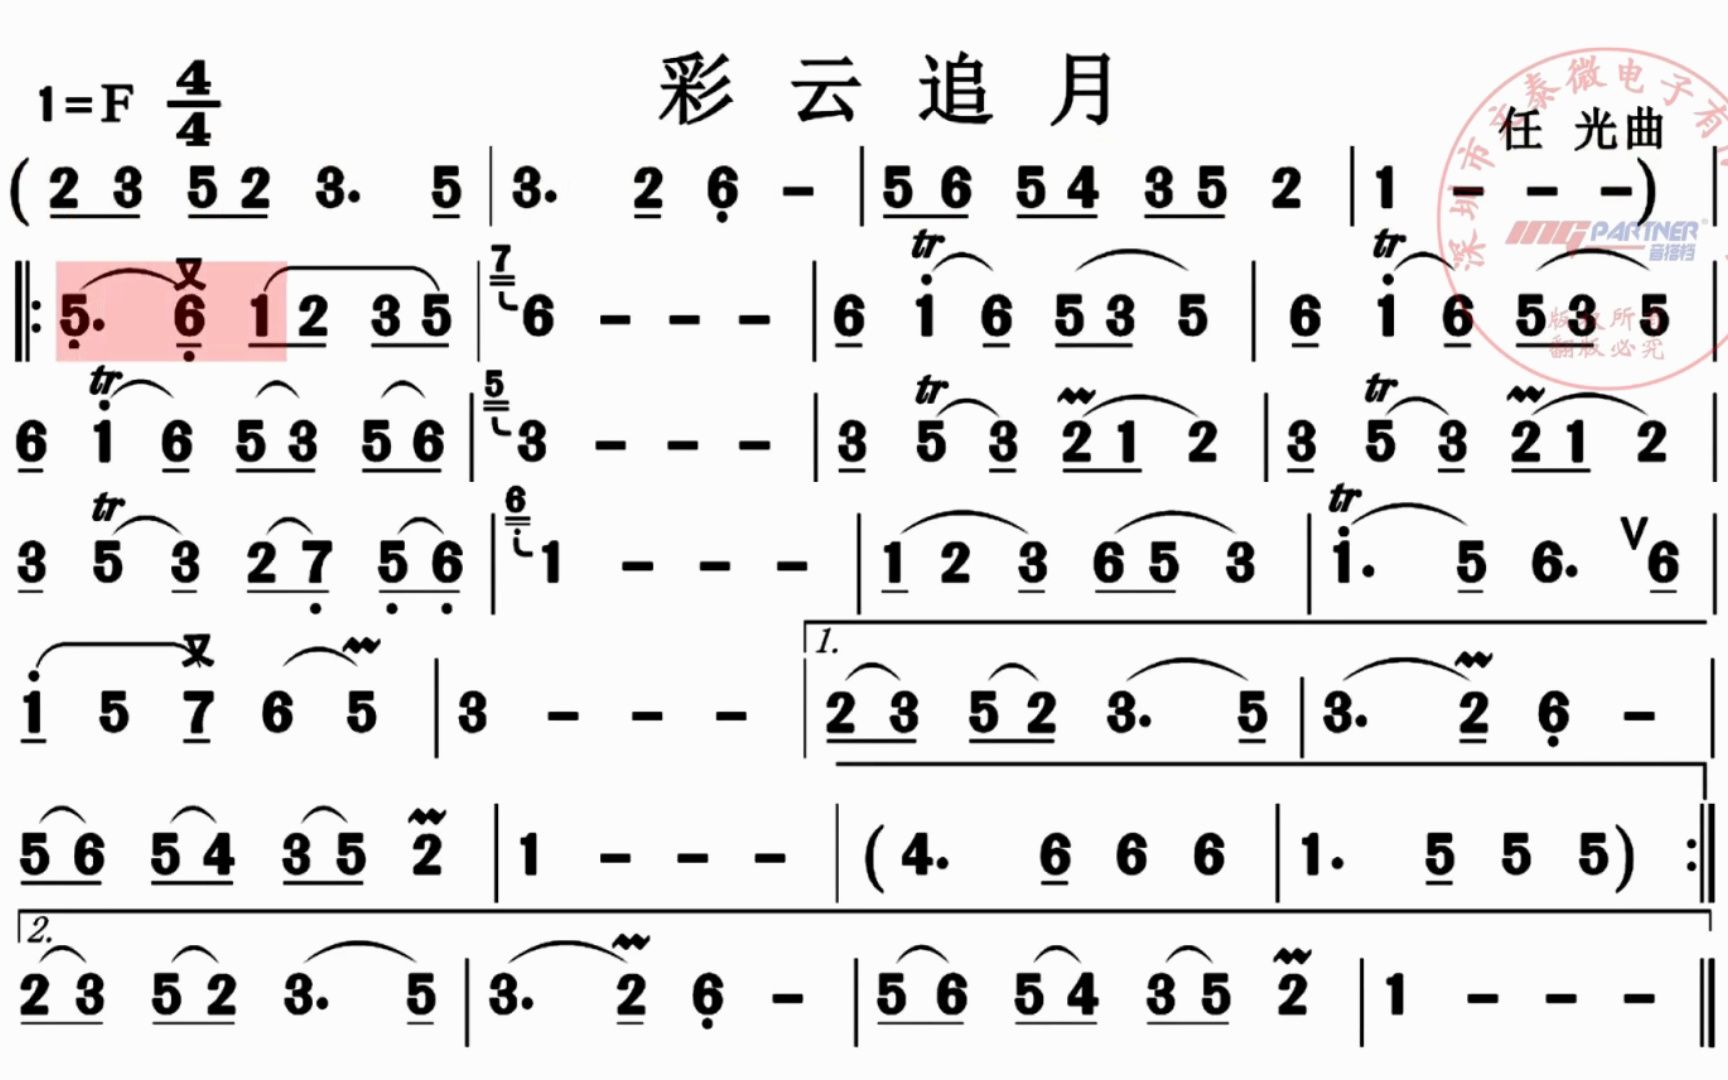 广东音乐的著名曲目《彩云追月》,电吹管演奏动态乐谱